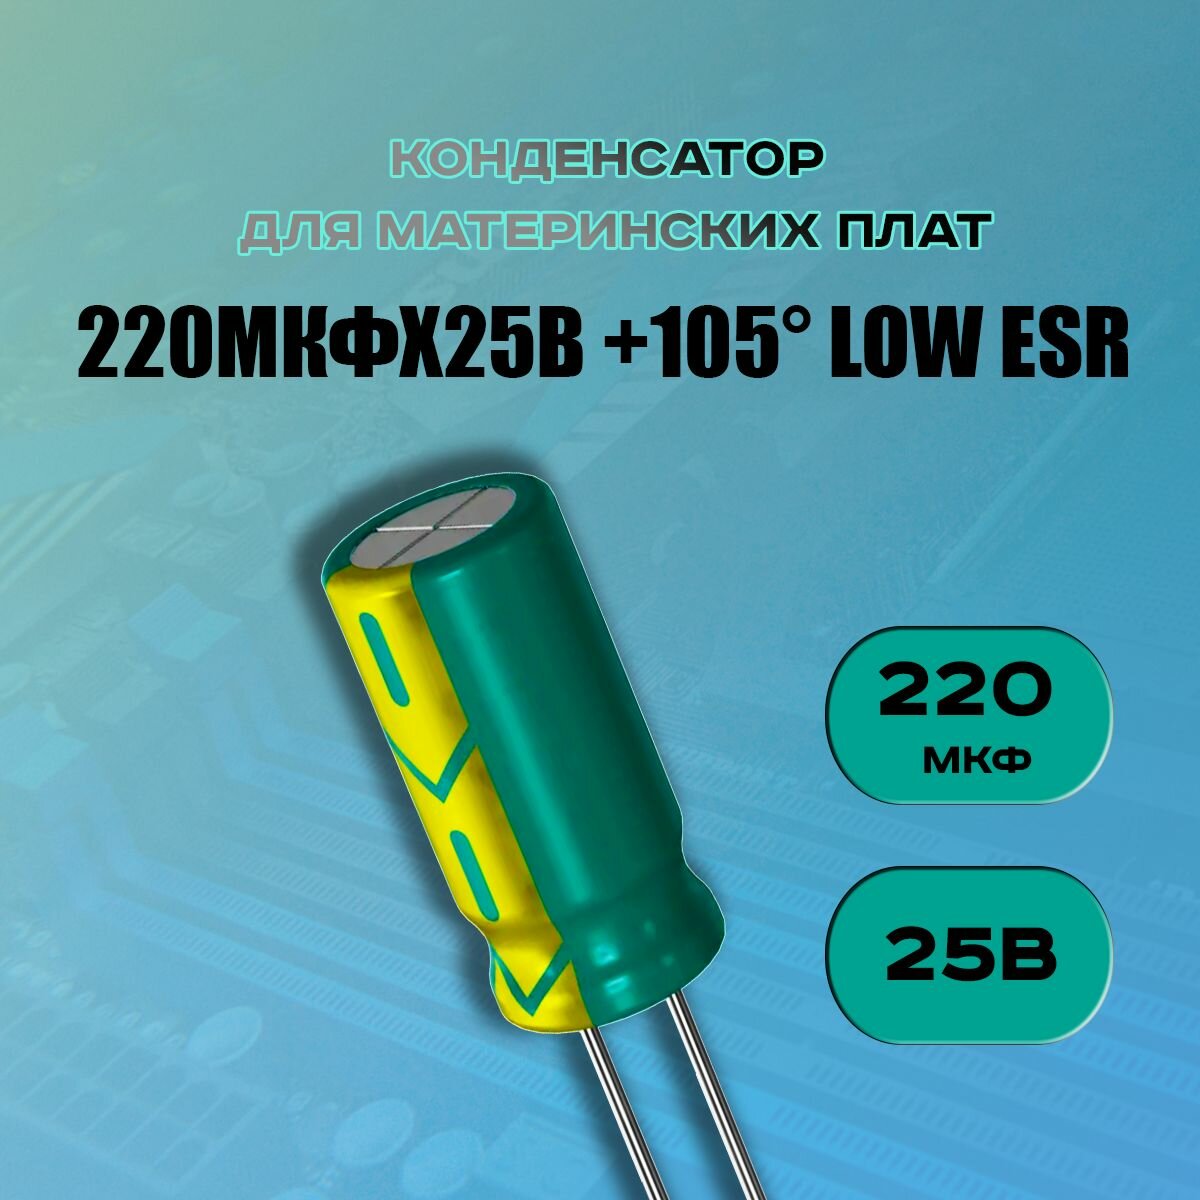 Конденсатор для материнской платы 220 микрофарат 25 Вольт (220uf 25V WL +105 LOW ESR) - 50 шт.